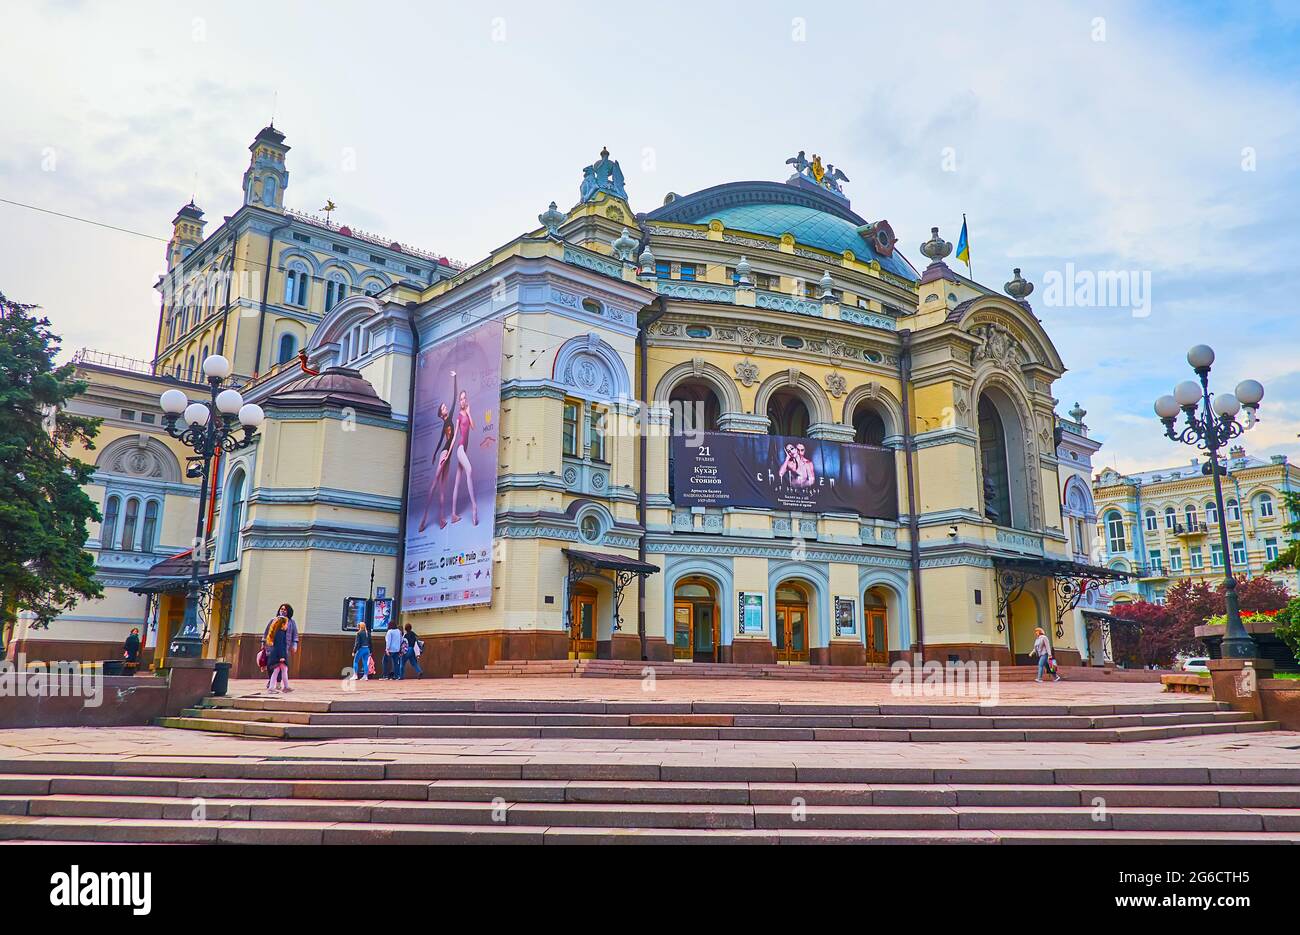 KIEW, UKRAINE - 18. MAI 2021: Außenansicht des Nationalen Academian Opera and Ballet Theatre of Taras Schewtschenko, gelegen in der Wolodymyrska Straße, am 18. Mai i Stockfoto